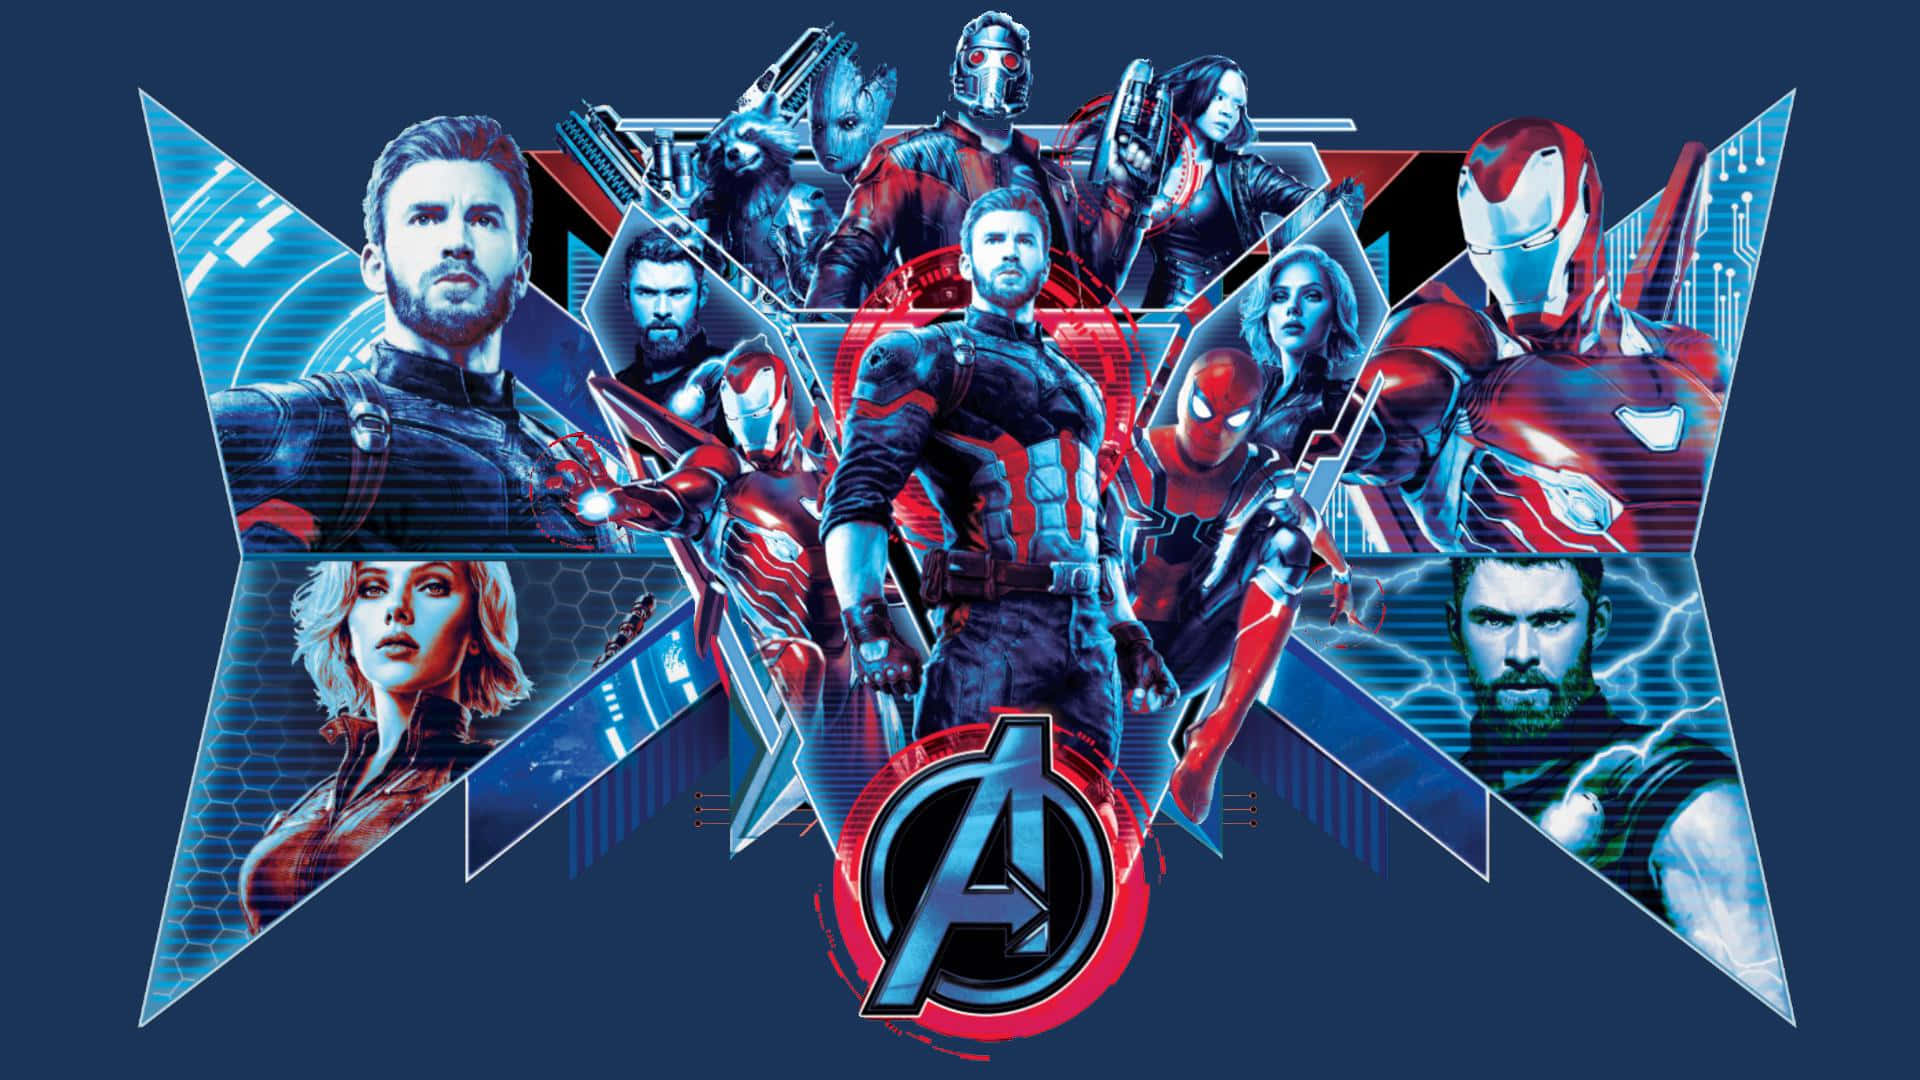 Upplevstriden Mellan Ultron Och Iron Man Avslöjas I Marvels Avengers: Infinity War.